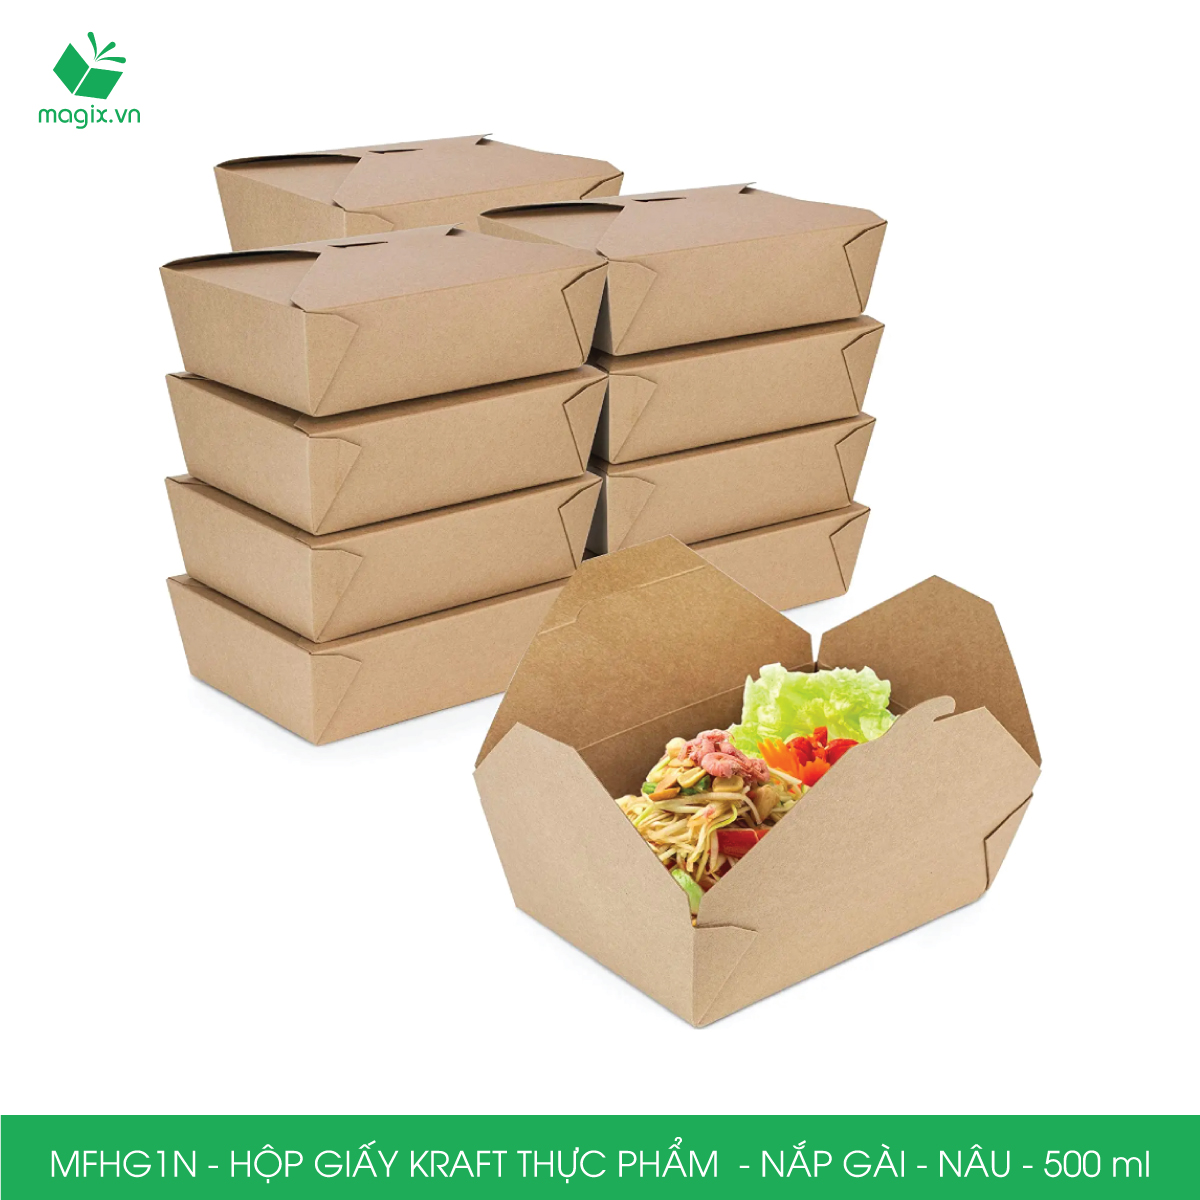 MFHG1N - 100 hộp giấy kraft thực phẩm 500ml, hộp giấy nắp gập màu nâu đựng thức ăn, hộp giấy nắp gài gói đồ ăn mang đi 